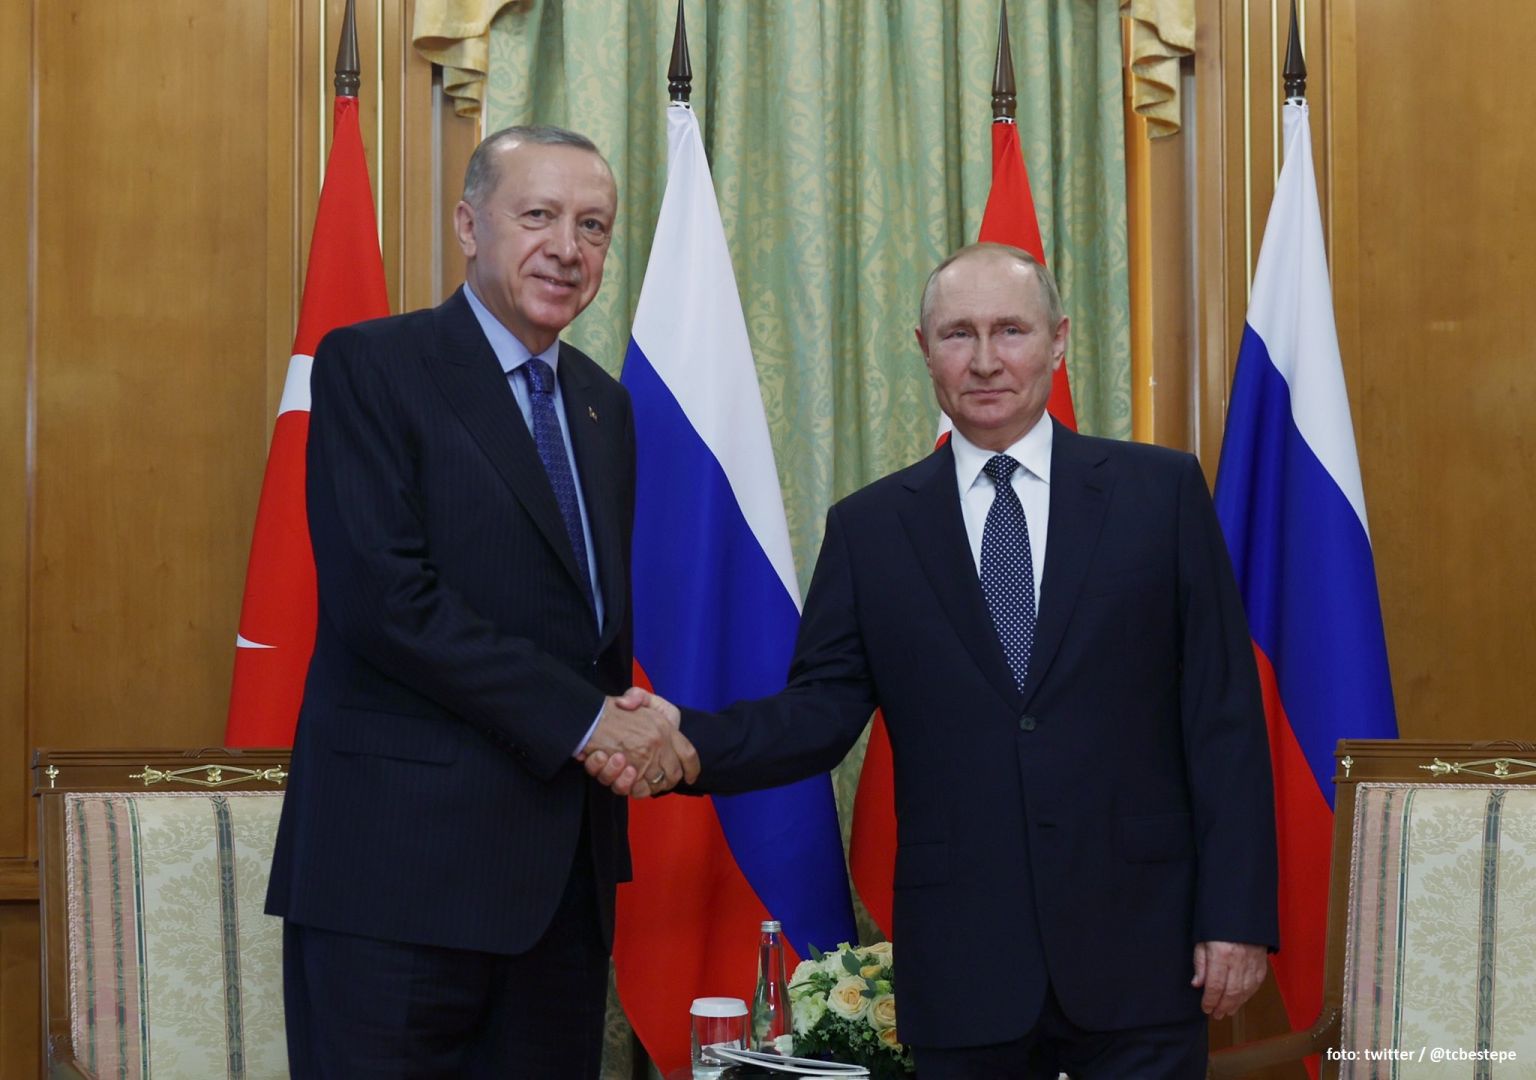 Erdoğan und Putin beginnen Treffen in Sotschi